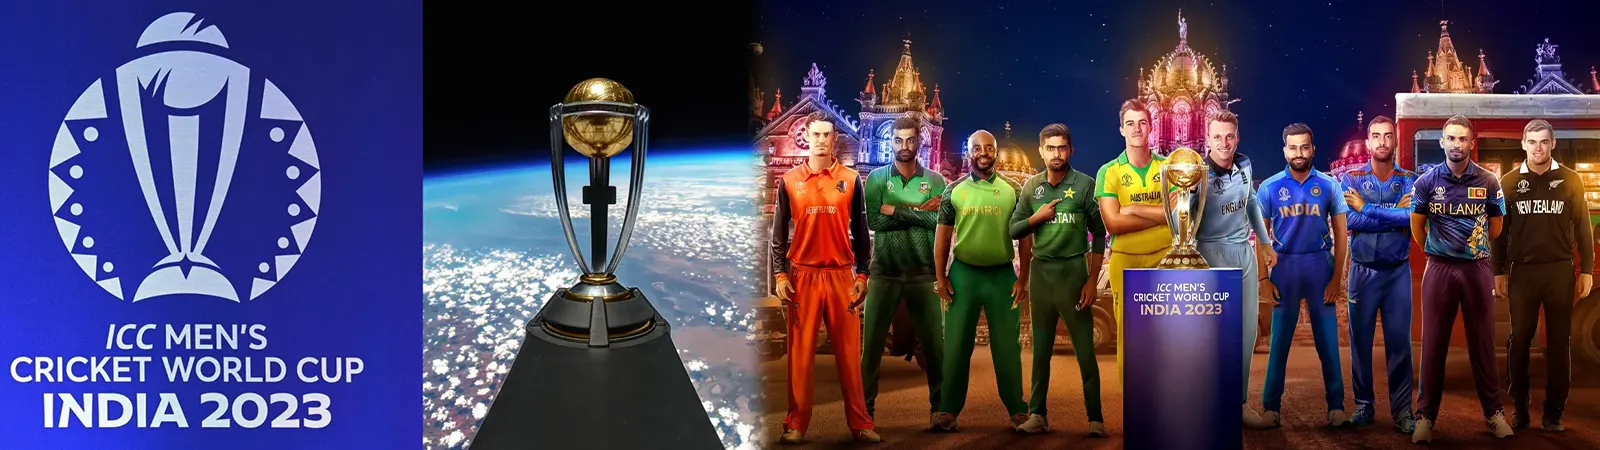 ODI World Cup 2023 Live Streaming : अब Free में देख सकेंगे World Cup!!! कब, कहाँ और कैसे बताएँगे हम